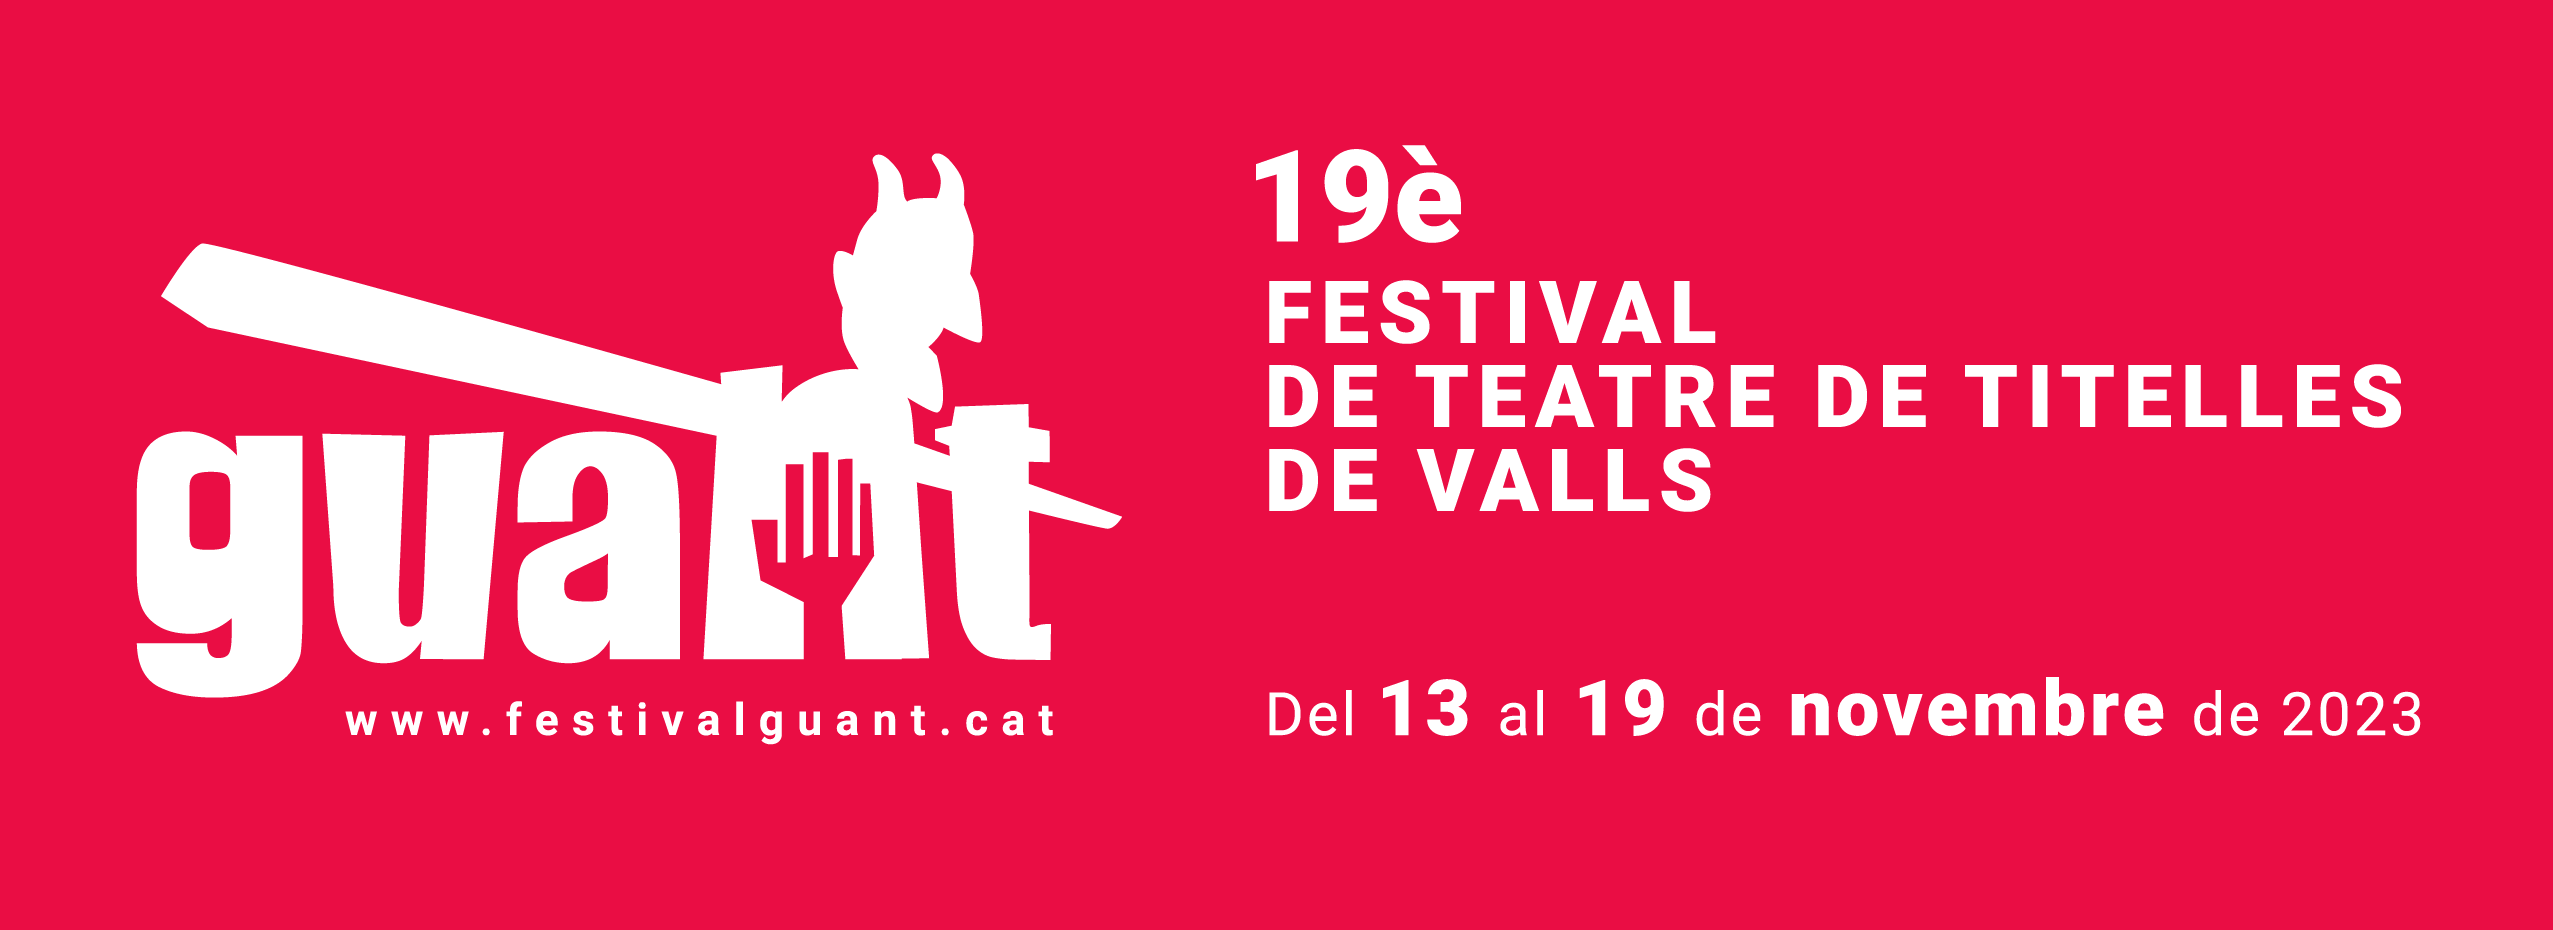 19è Festival internacional de teatre de titelles de Valls | Programació altres localitats ’23